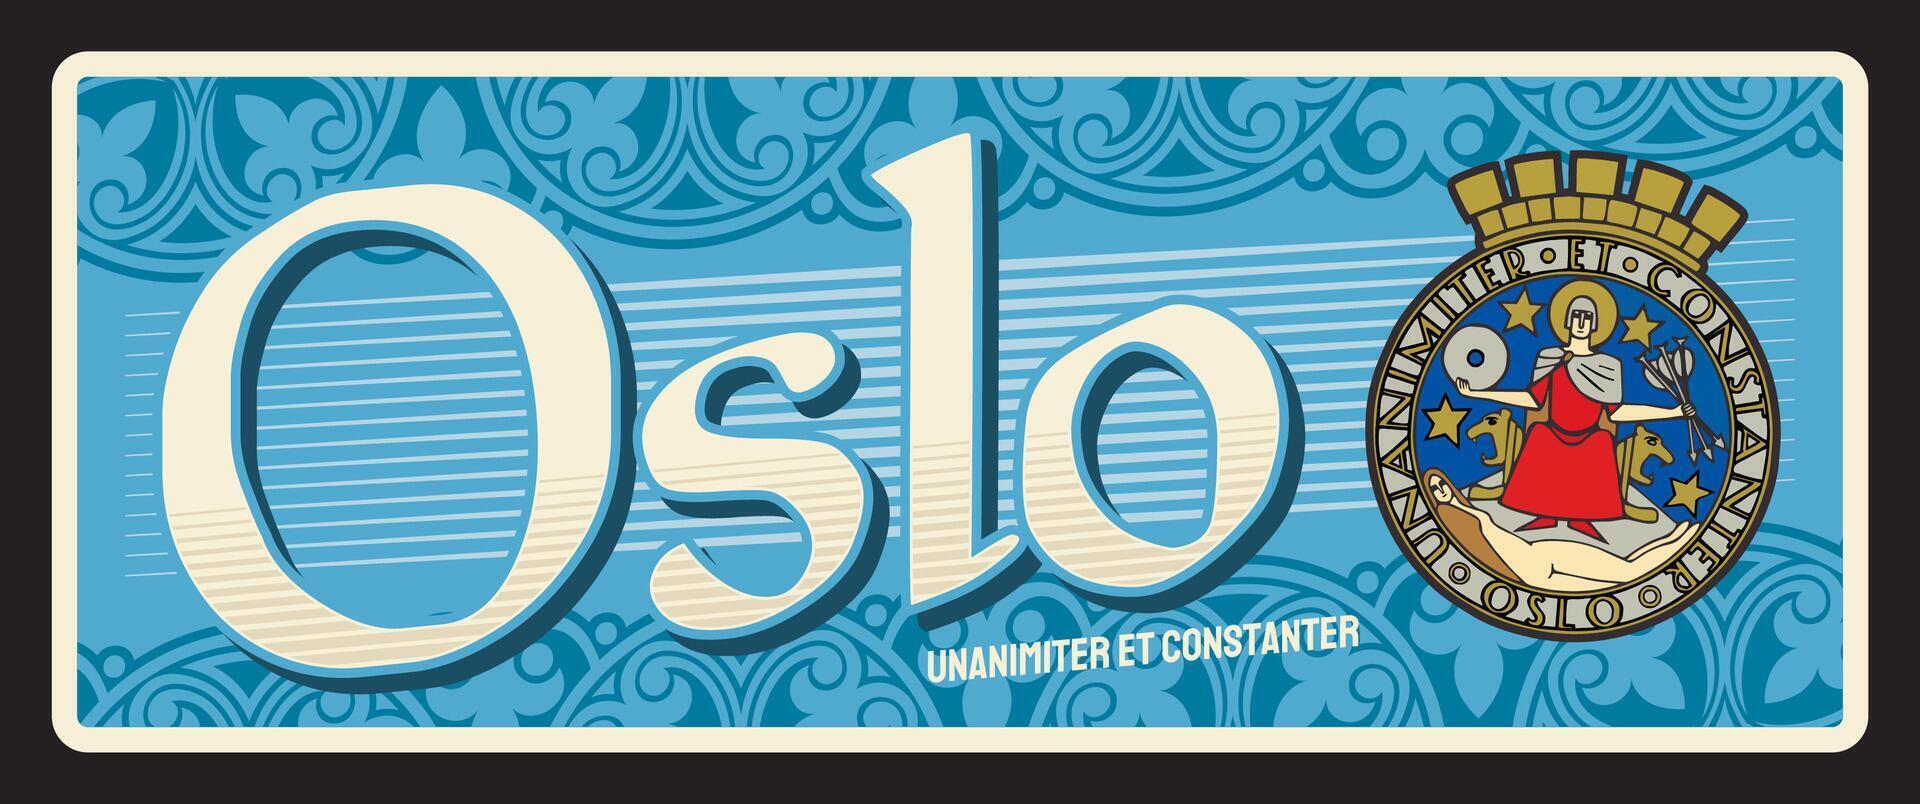 Oslo Noors stad reizen sticker vector